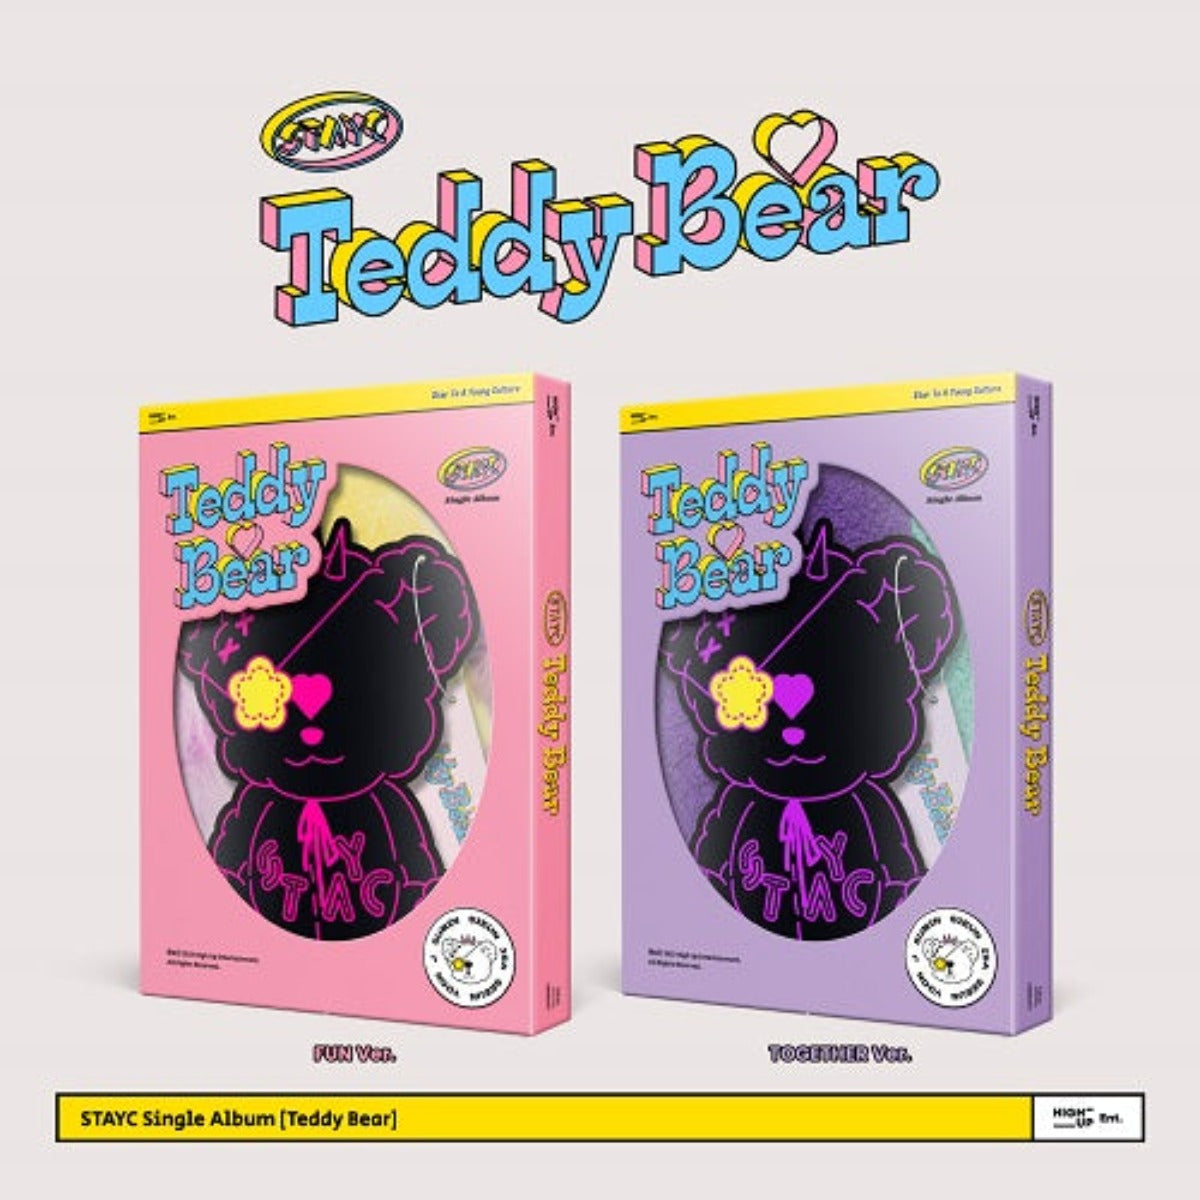 STAYC Single Album Vol. 4 - Teddy Bear